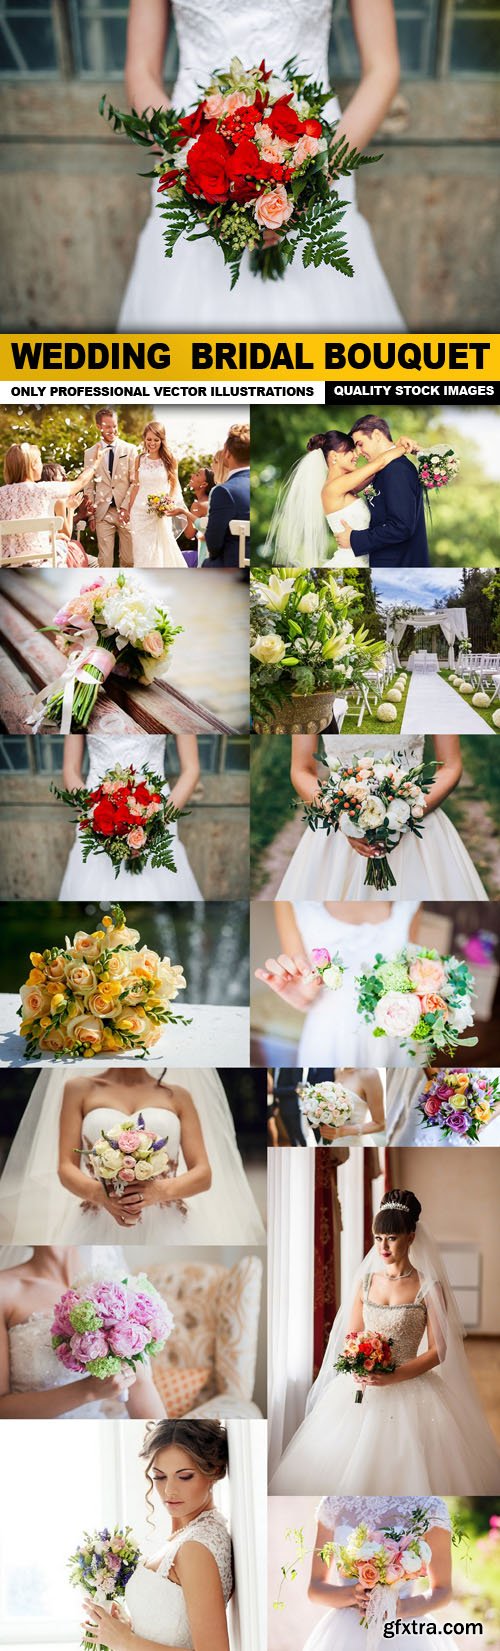 Wedding Bridal Bouquet - 15 HQ Images